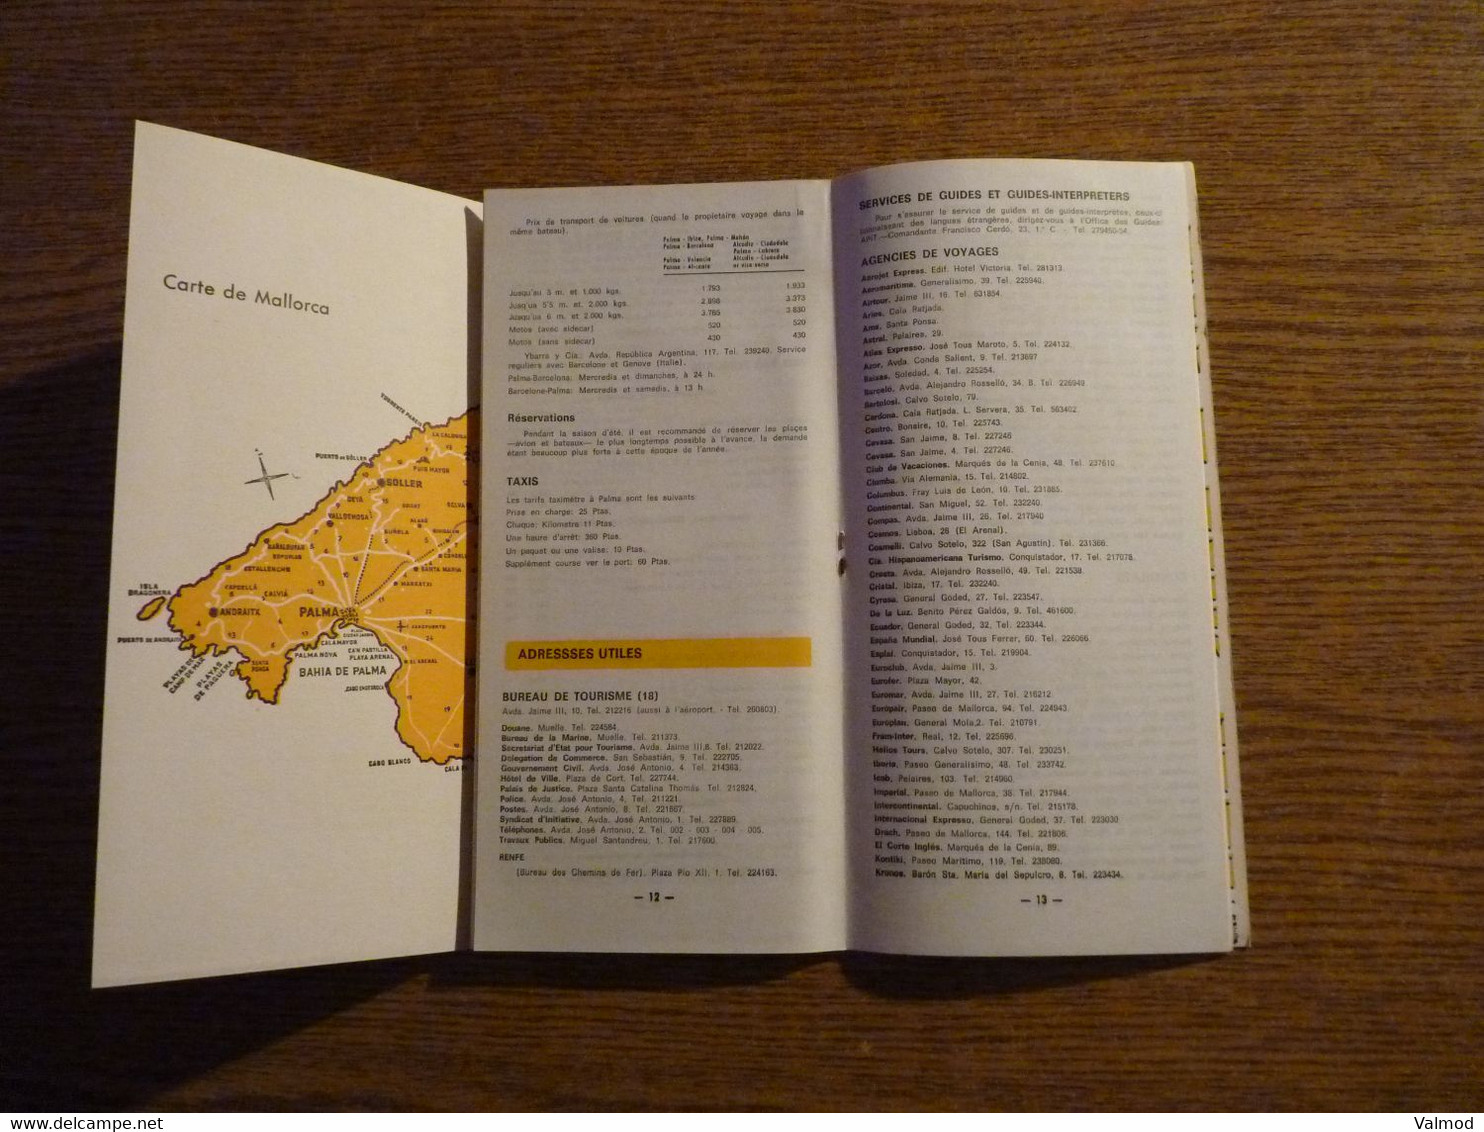 Mallorca - Espagne - Livret/Dépliant Touristique ancien 24 Pages + Dépliant 3 Volets - Format plié 11,5 x 24 cm environ.